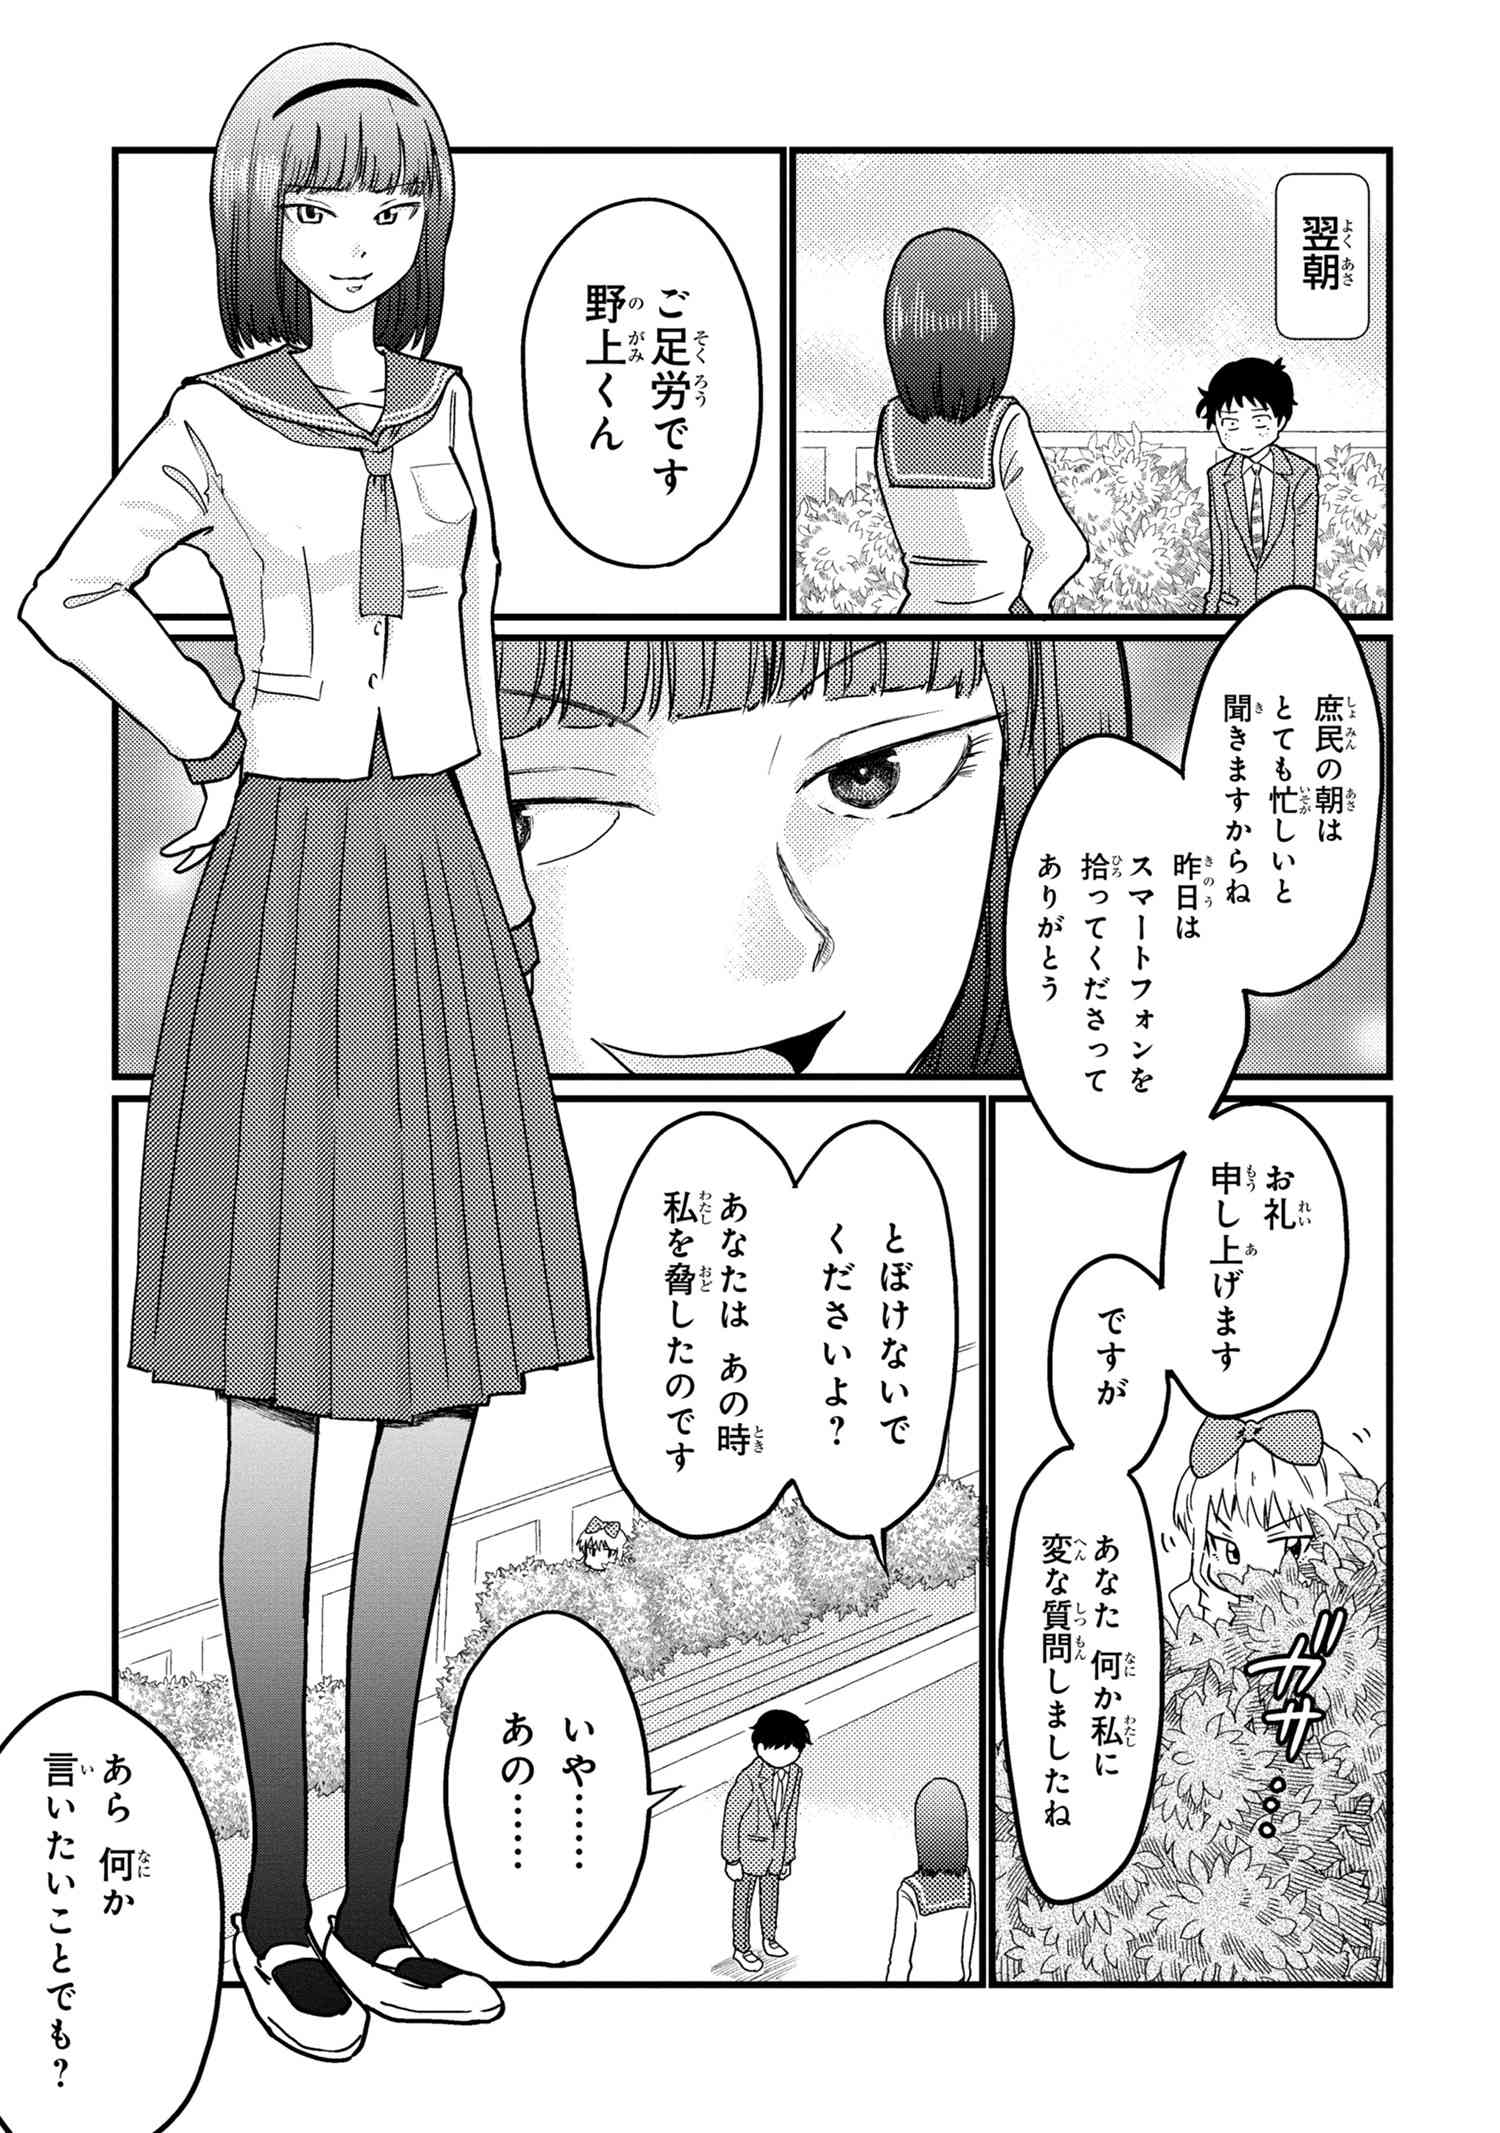 Houjou Urara no renai shousetsu o kaki nasai! - Chapter 14 - Page 3